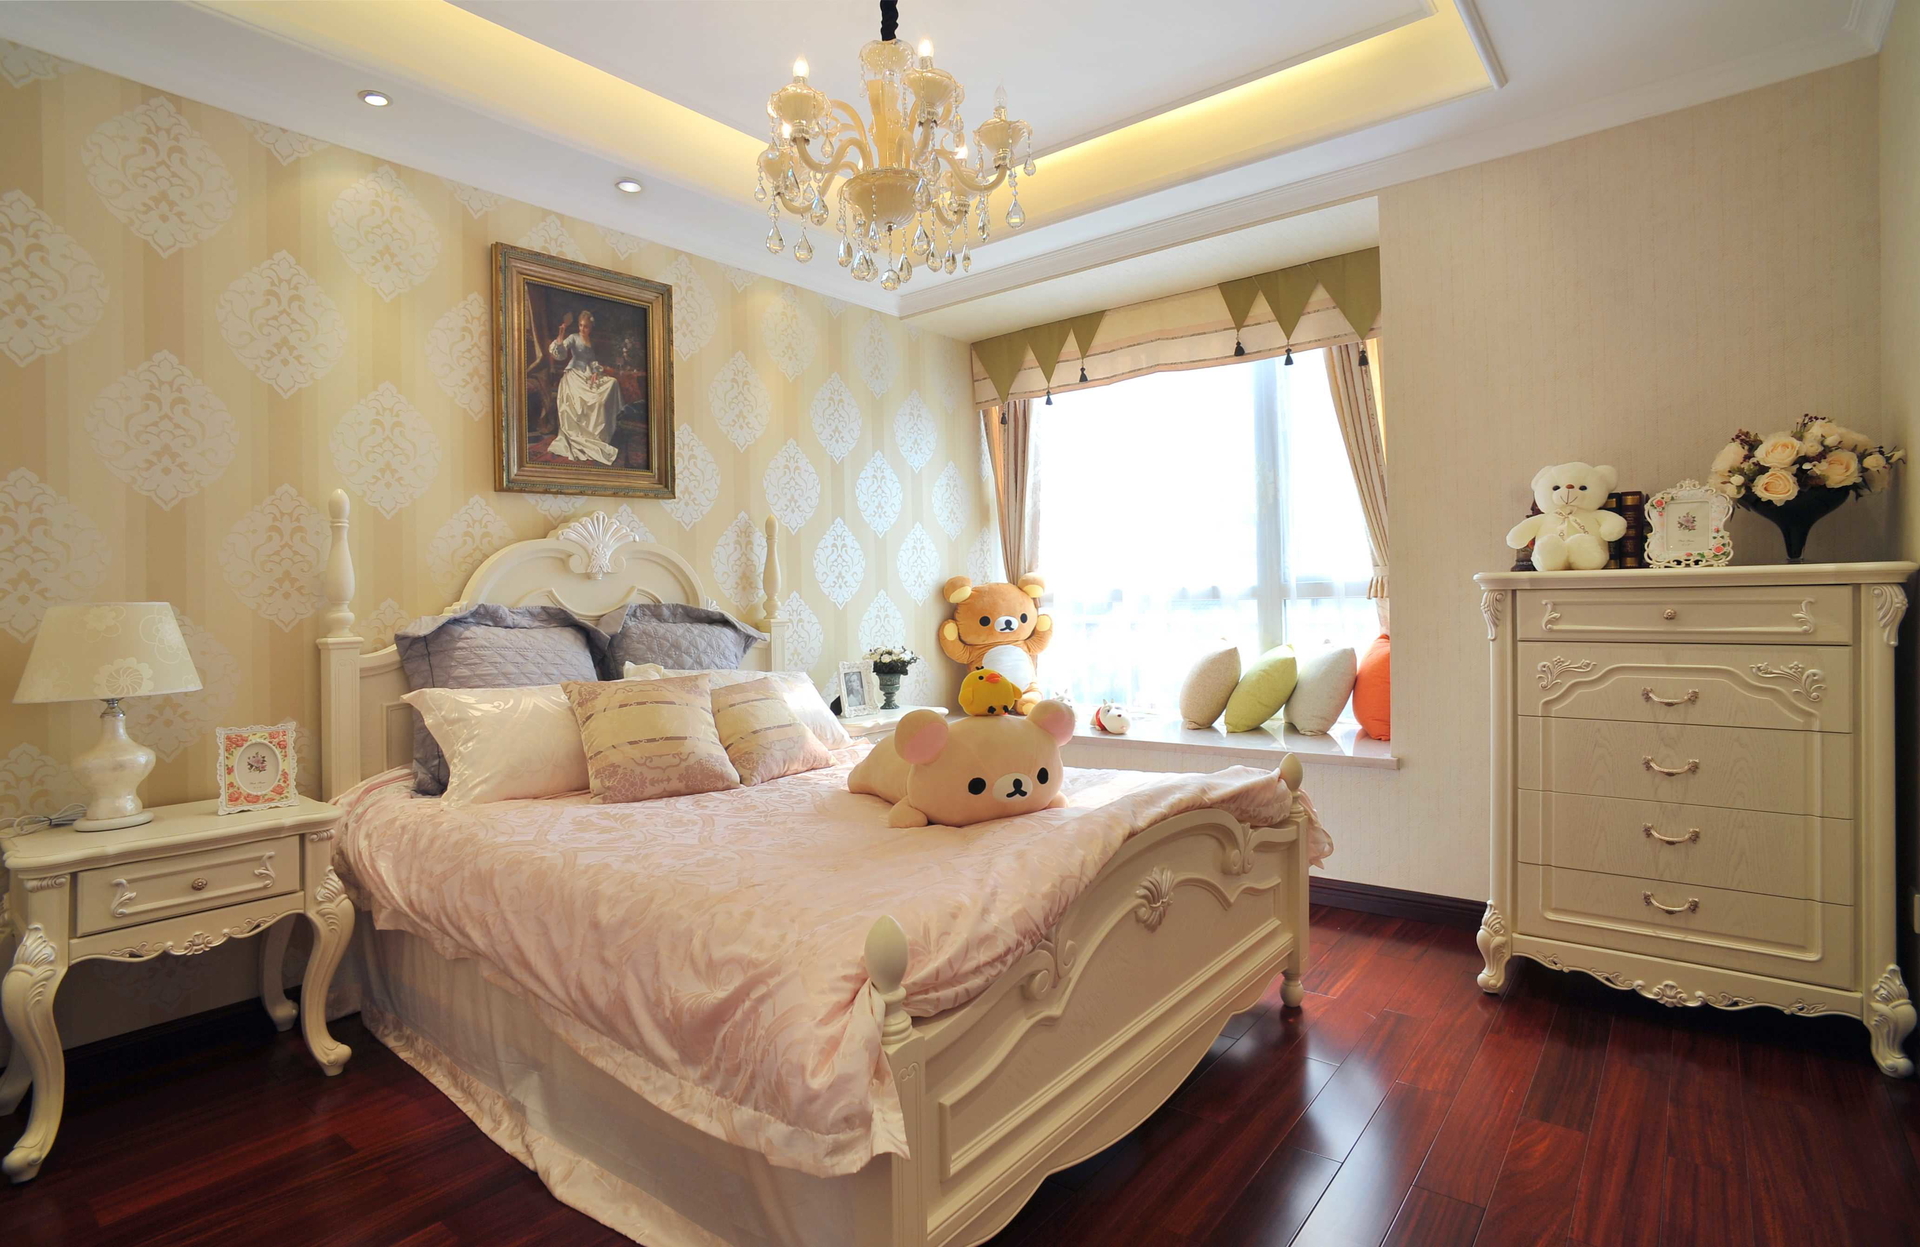 欧式 旧房改造 复式 LOFT 装修风格 儿童房图片来自北京生活家装饰公司在160平 复式欧式风格装修的分享